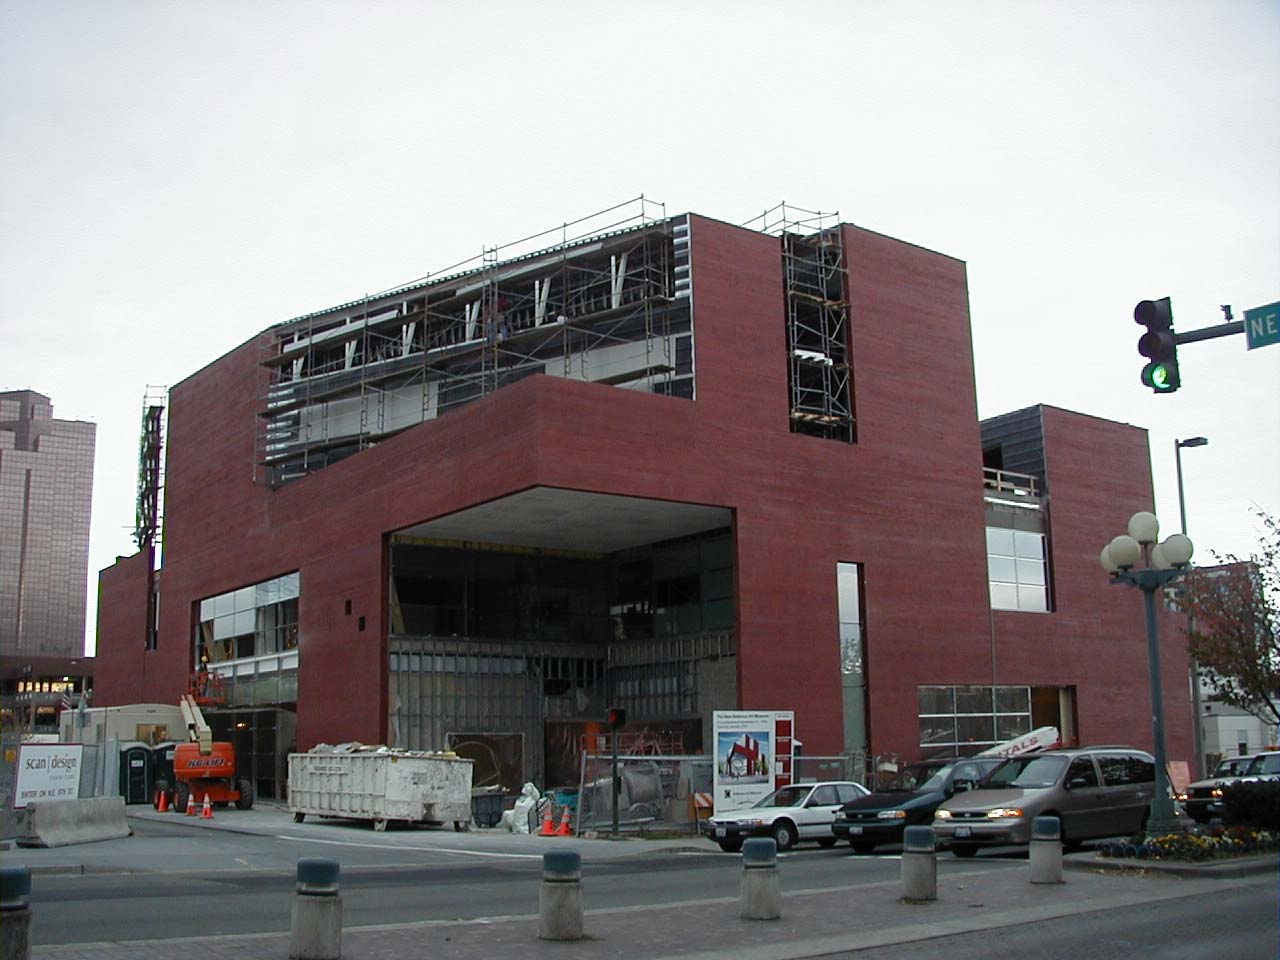 bellevue arts museum